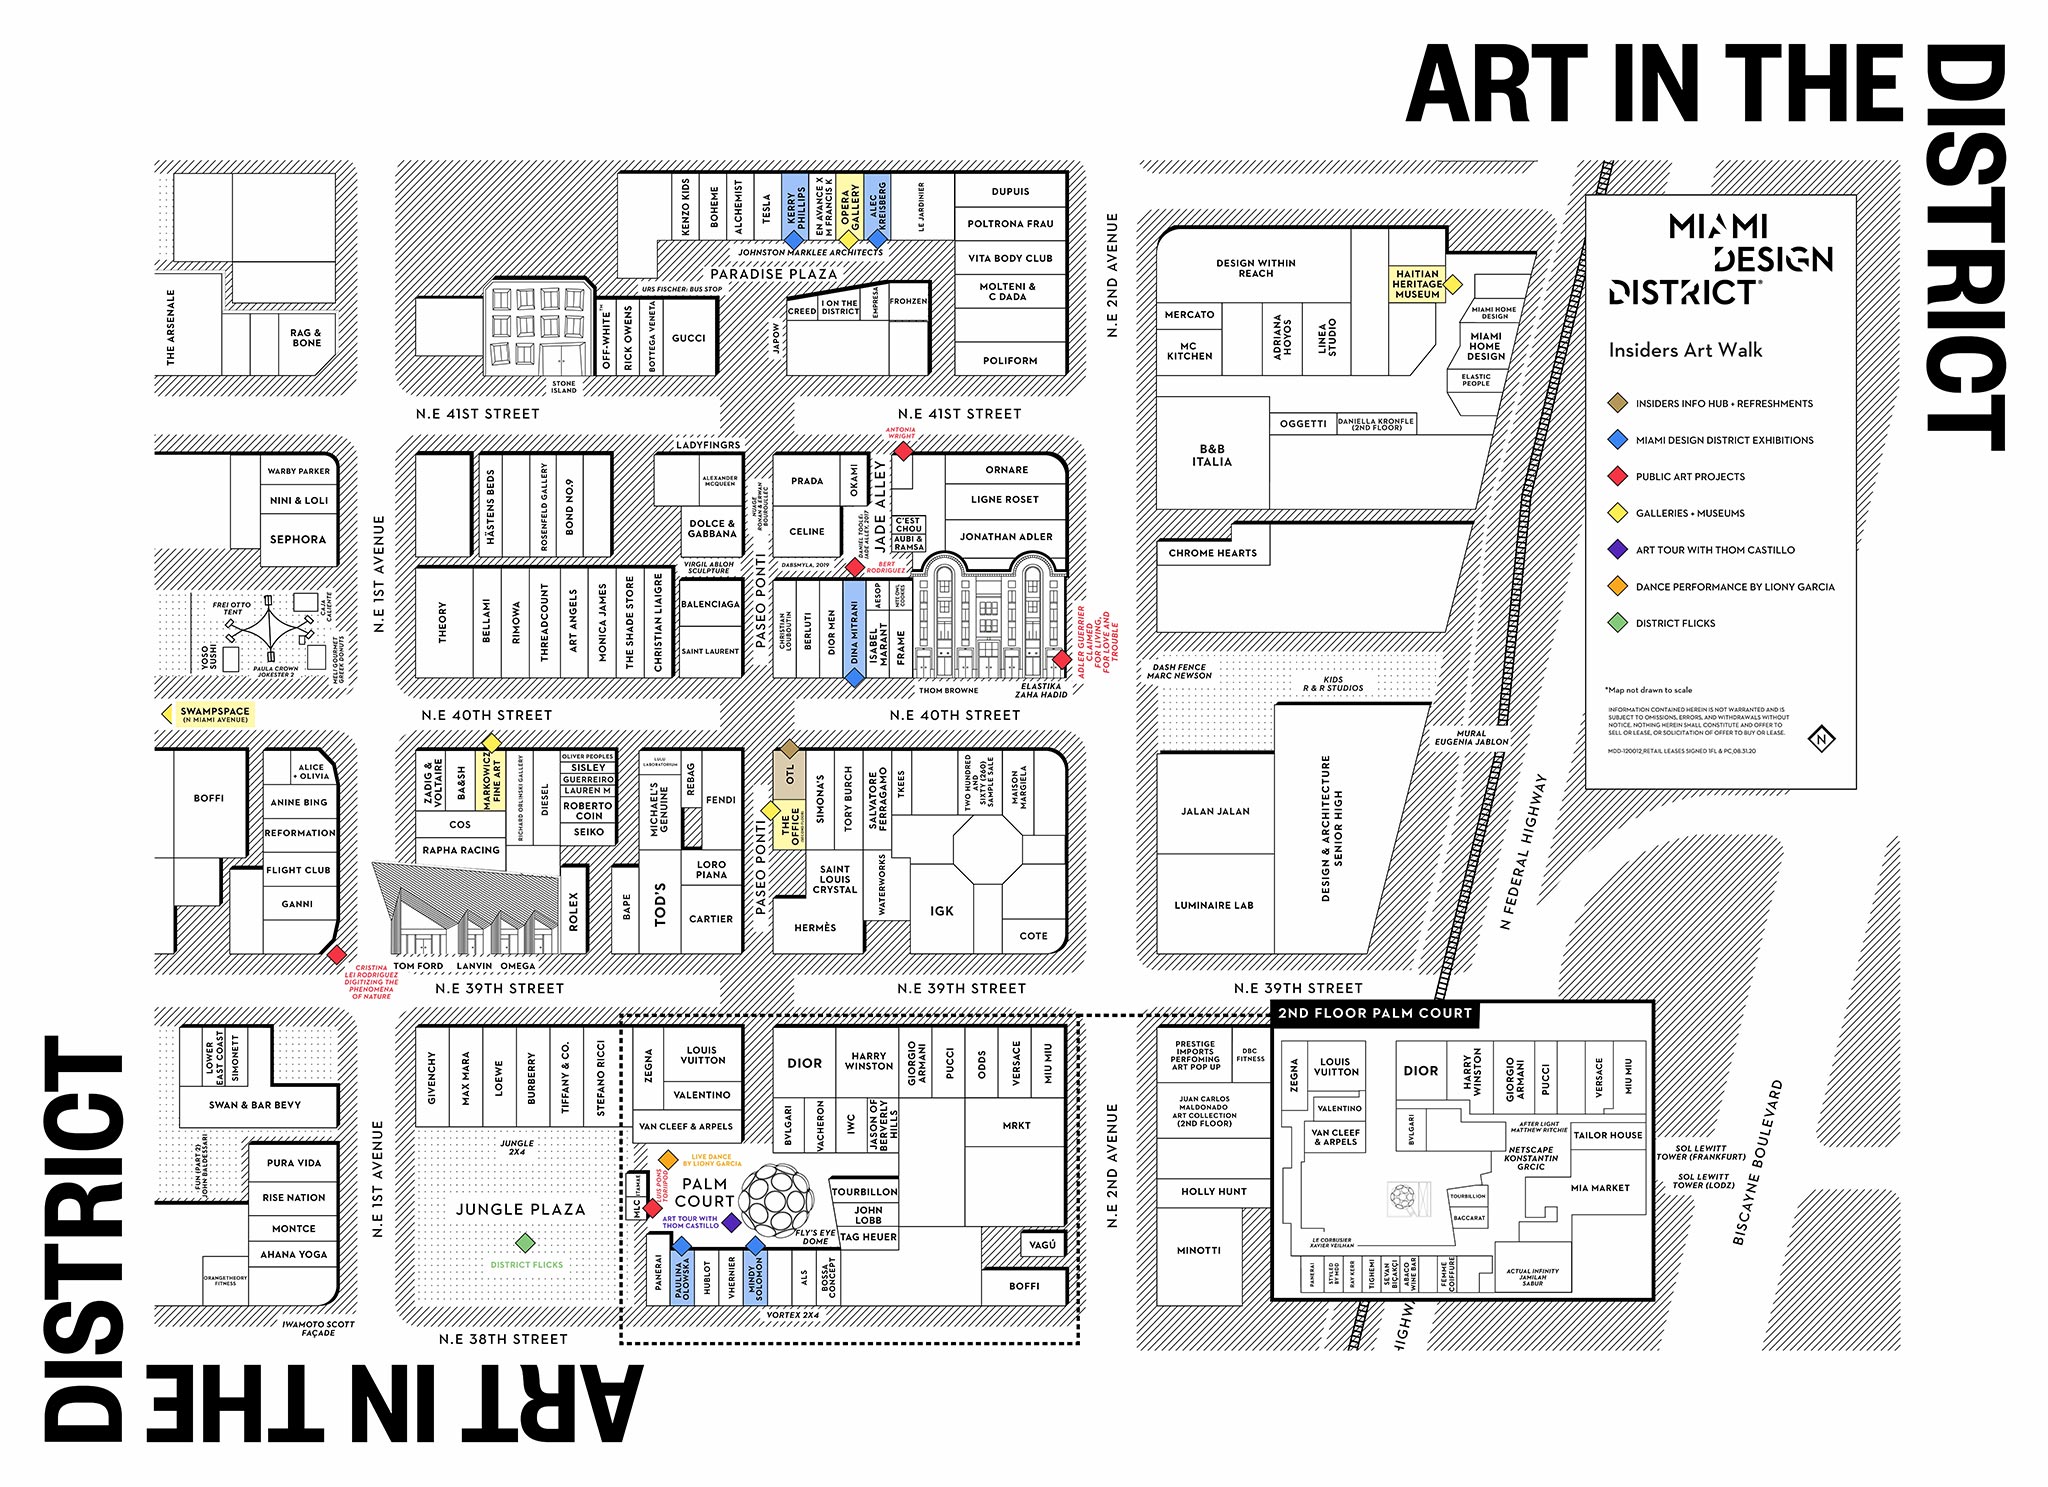 Insiders Art Walk Map